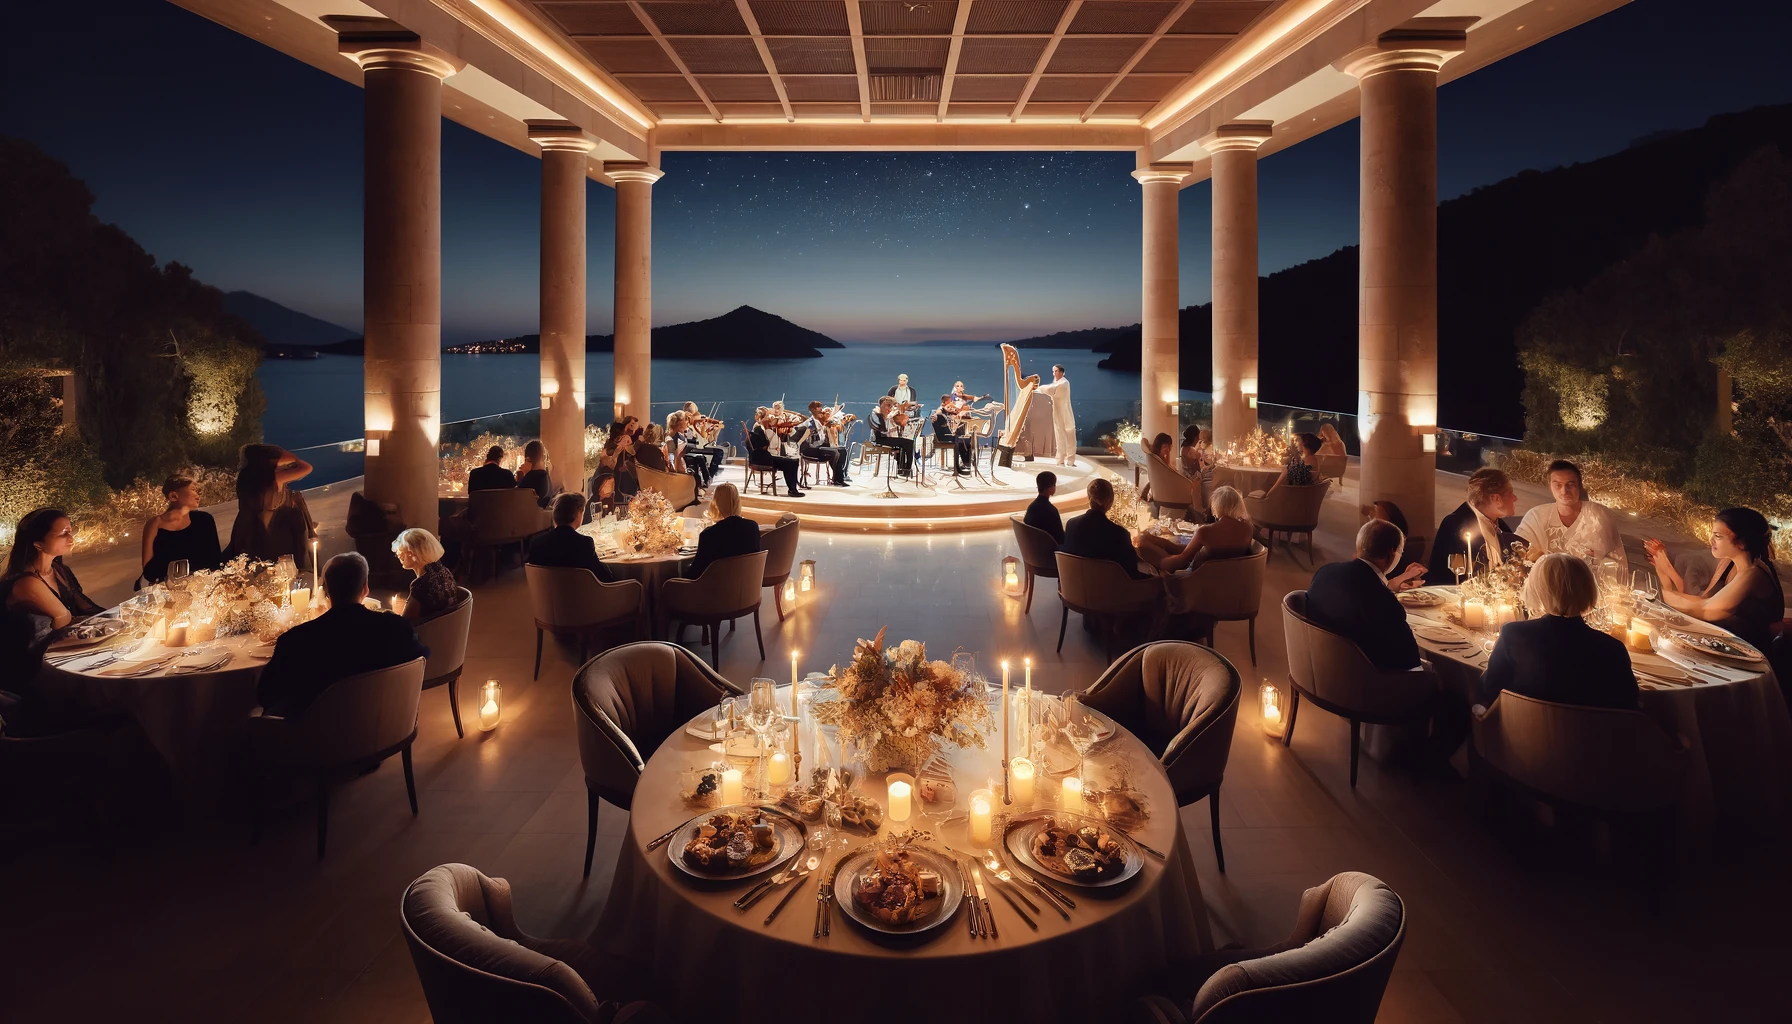 Романтический музыкальный вечер на террасе отеля Mandarin Oriental Bodrum. Они передают безмятежную и роскошную атмосферу: гости наслаждаются классической музыкой, красиво накрытыми столами и потрясающим средиземноморским пейзажем.